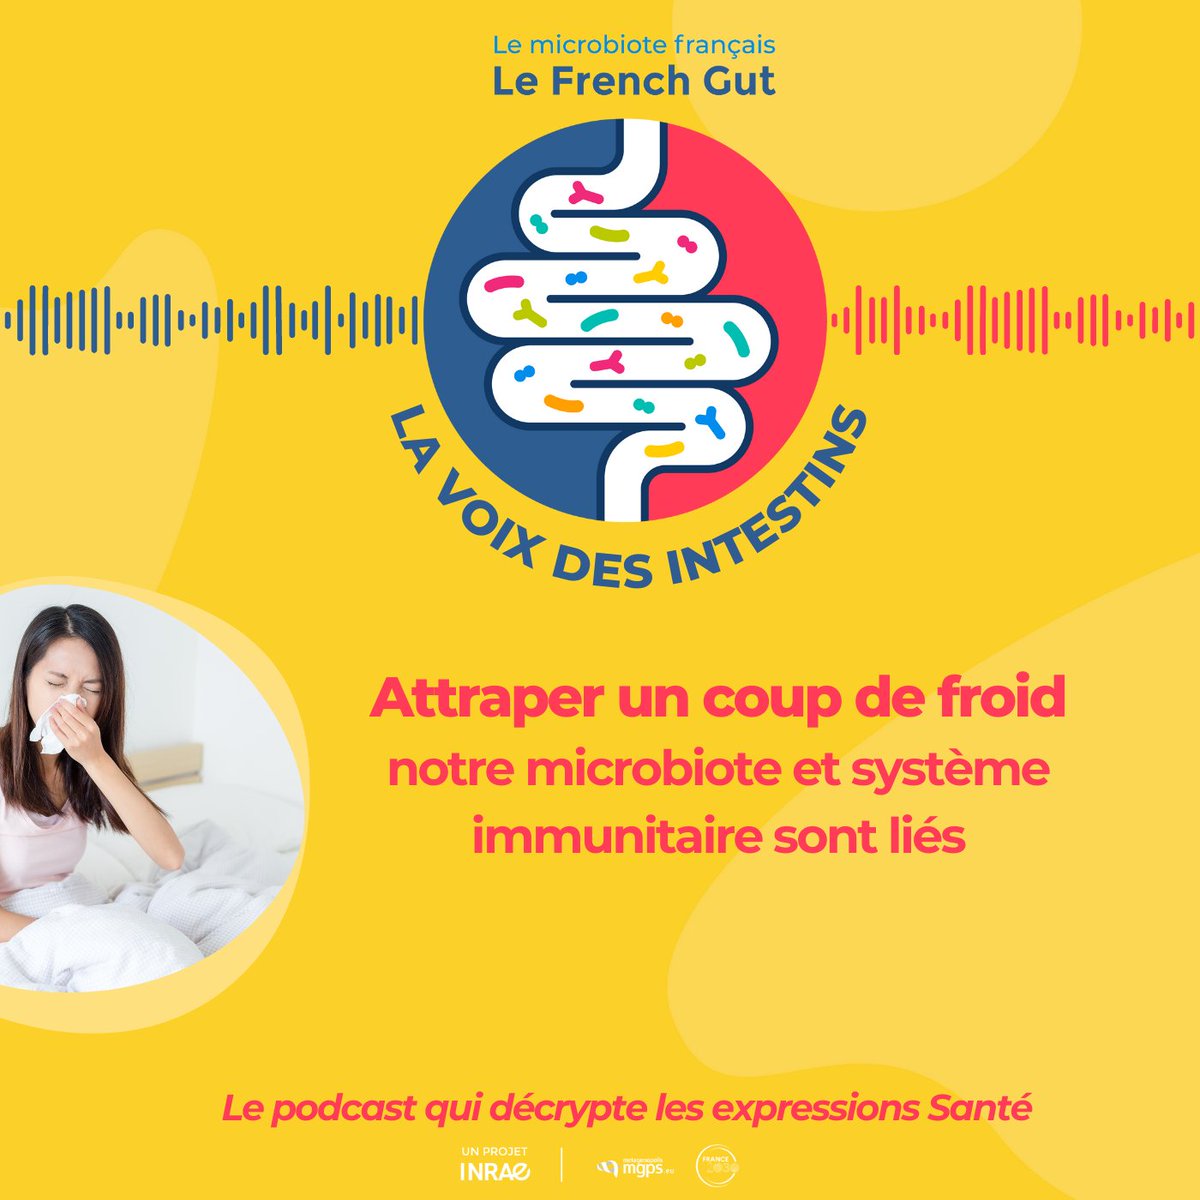 🎙#Podcast 'LA VOIX DES INTESTINS' - Sortie de l'épisode 4 - '𝘈𝘵𝘵𝘳𝘢𝘱𝘦𝘳 𝘶𝘯 𝘤𝘰𝘶𝘱 𝘥𝘦 𝘧𝘳𝘰𝘪𝘥', 𝘯𝘰𝘵𝘳𝘦 #𝘮𝘪𝘤𝘳𝘰𝘣𝘪𝘰𝘵𝘦 𝘦𝘵 𝘯𝘰𝘵𝘳𝘦 𝘴𝘺𝘴𝘵𝘦̀𝘮𝘦 #𝘪𝘮𝘮𝘶𝘯𝘪𝘵𝘢𝘪𝘳𝘦 𝘴𝘰𝘯𝘵 𝘭𝘪𝘦́𝘴'🎙 bonne écoute ! @INRAE_France @MgpsLab avec @APHP